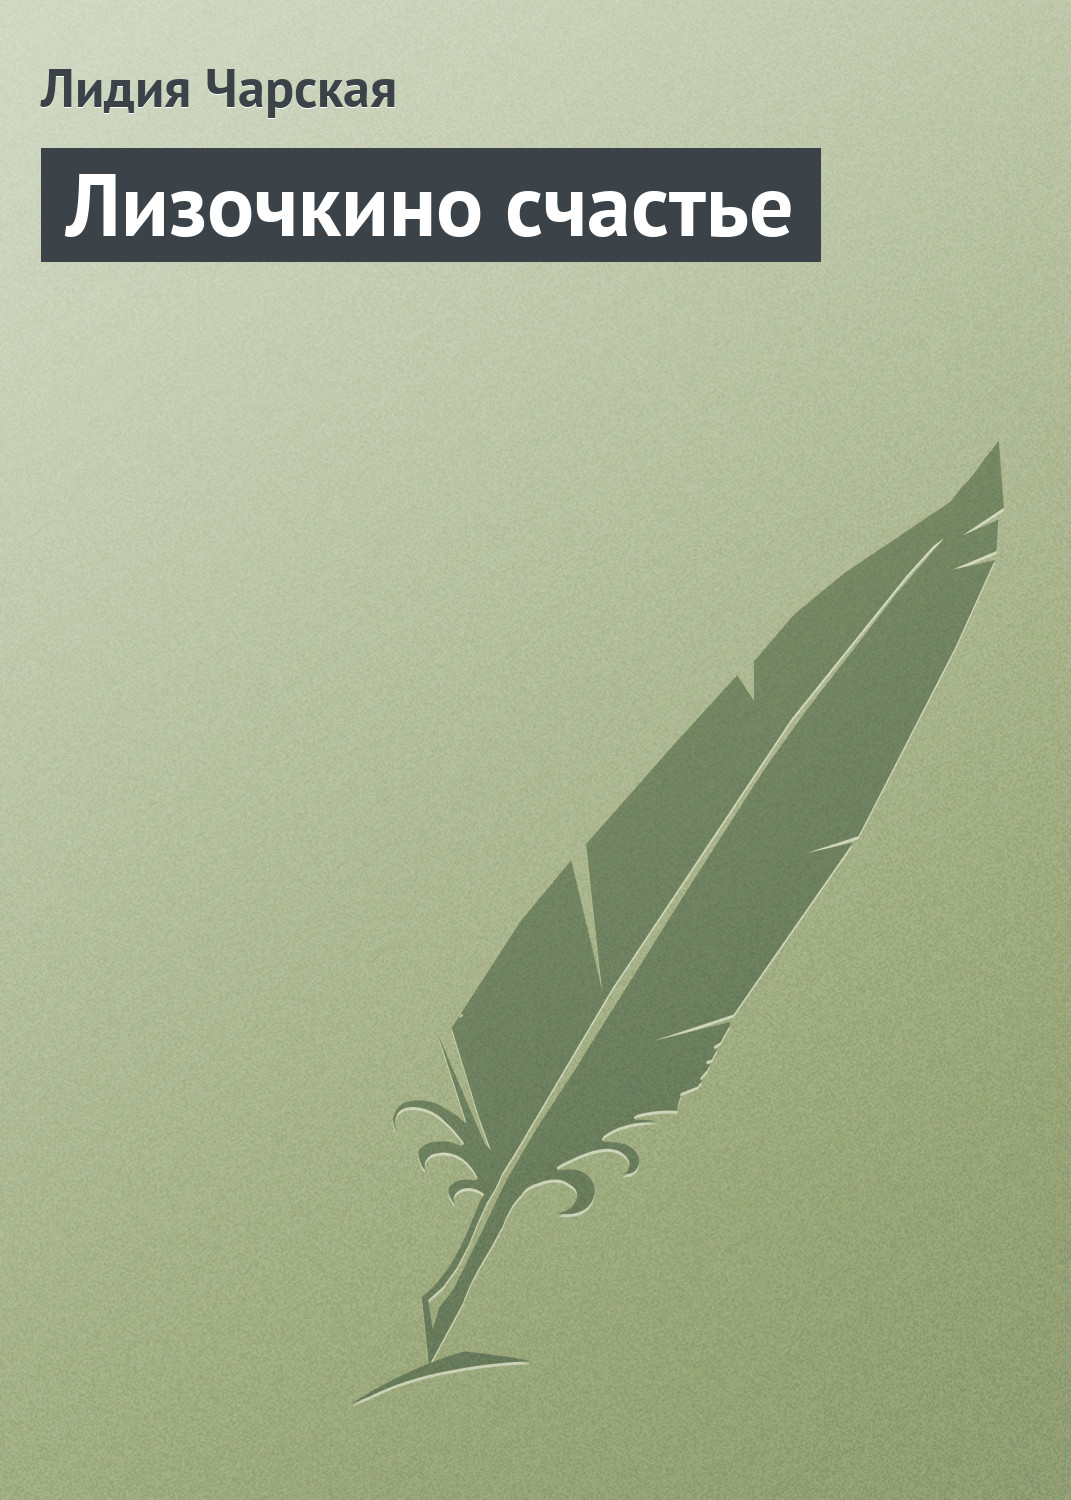 Книга Лизочкино счастье из серии , созданная Лидия Чарская, может относится к жанру Русская классика, Детская проза. Стоимость электронной книги Лизочкино счастье с идентификатором 635955 составляет 5.99 руб.